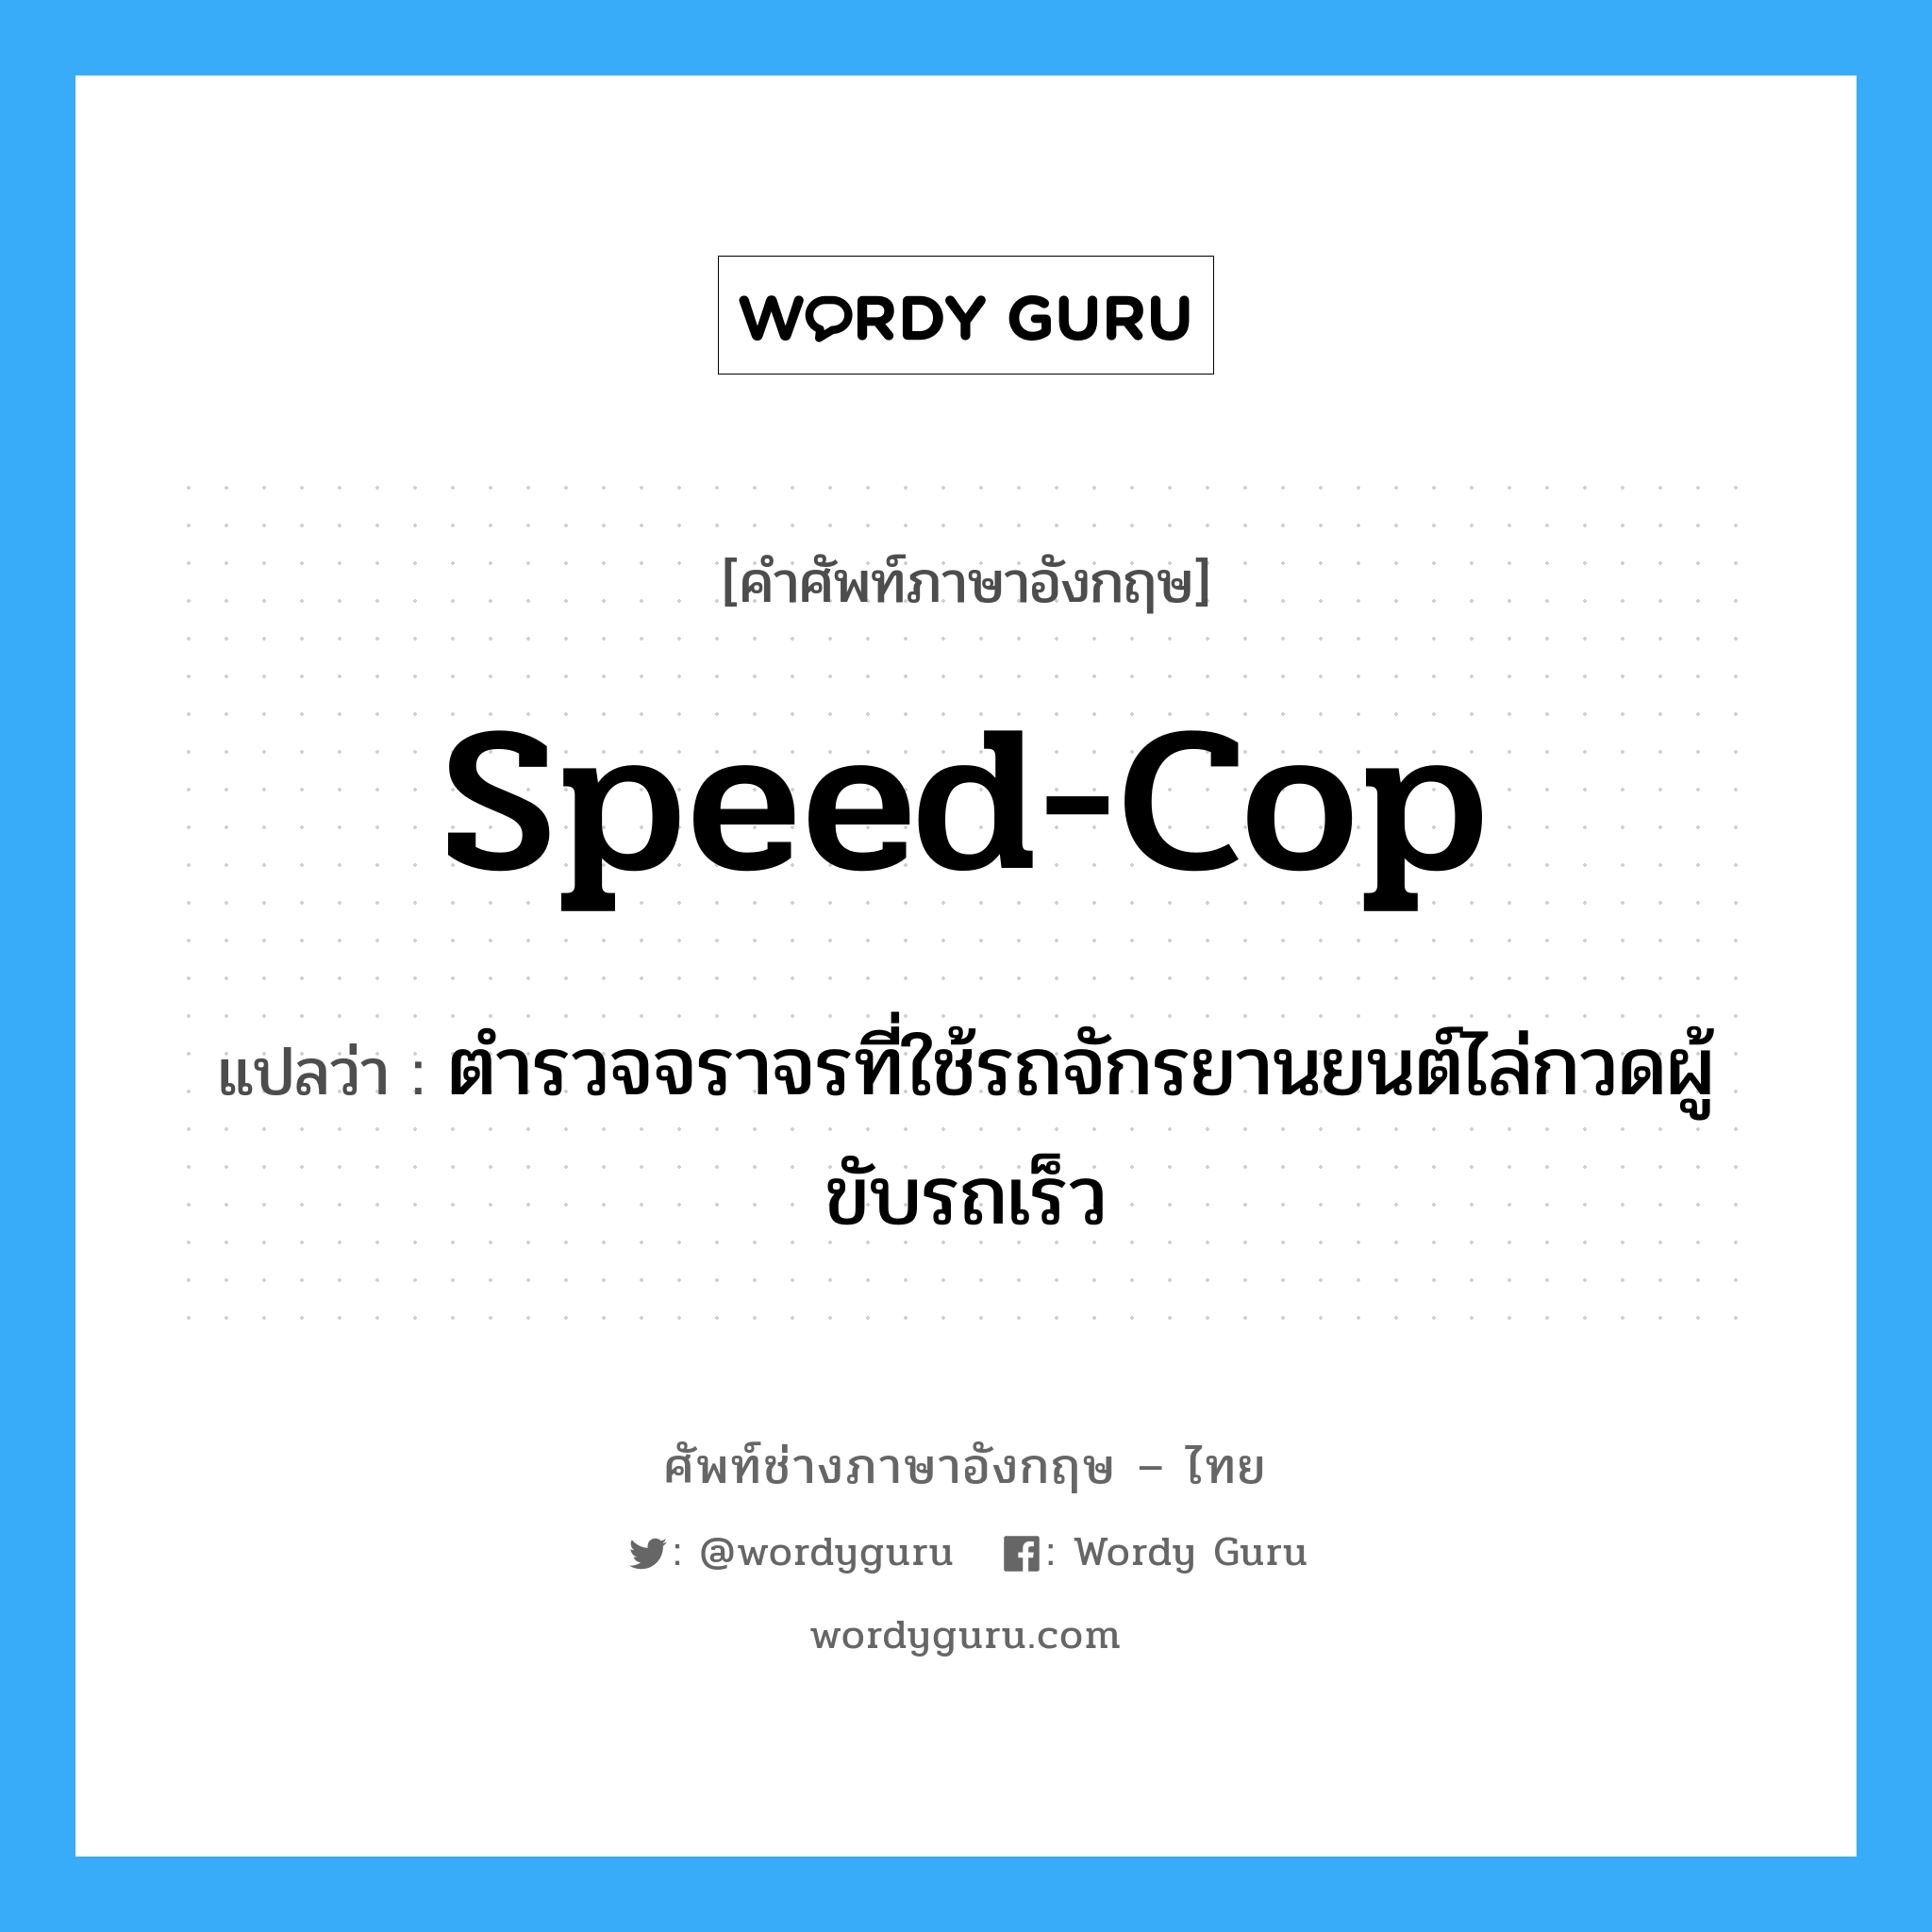 Speed-Cop แปลว่า?, คำศัพท์ช่างภาษาอังกฤษ - ไทย Speed-Cop คำศัพท์ภาษาอังกฤษ Speed-Cop แปลว่า ตำรวจจราจรที่ใช้รถจักรยานยนต์ไล่กวดผู้ขับรถเร็ว